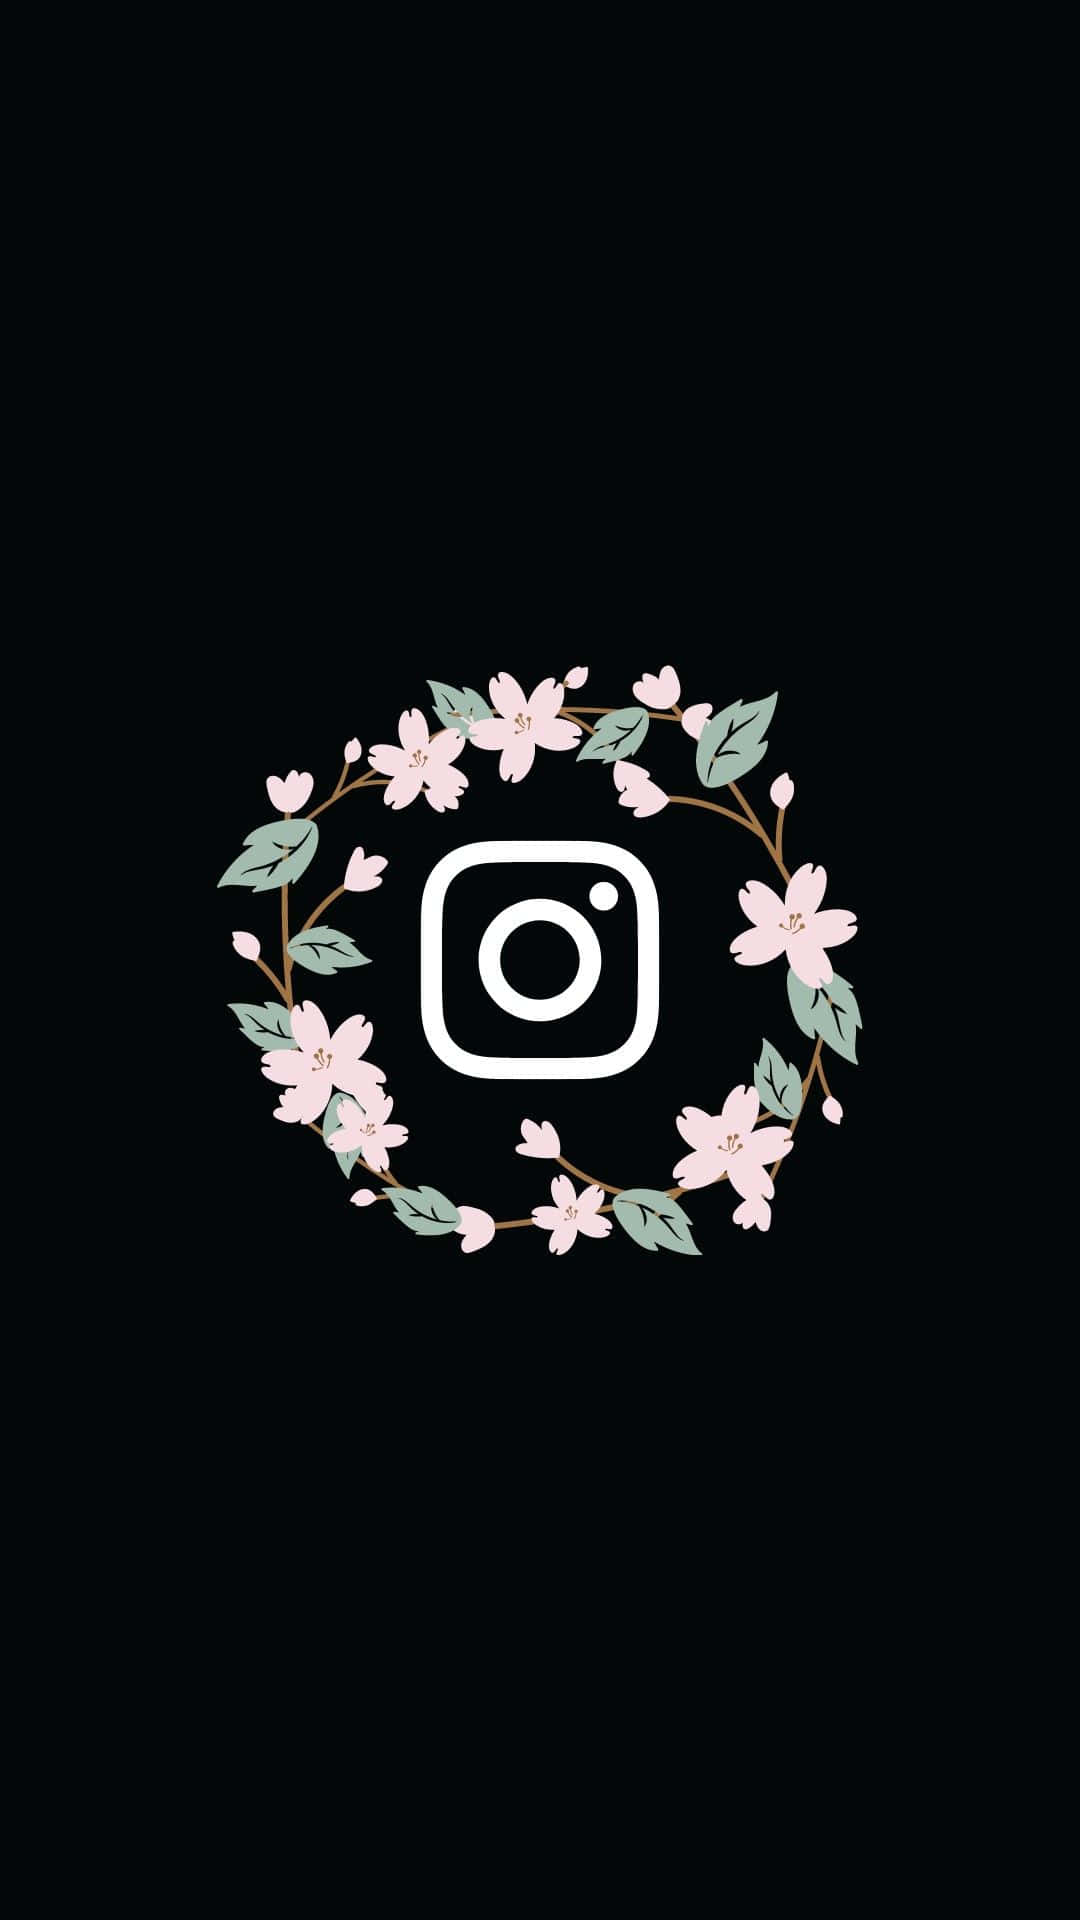 Coronadi Fiori Con Il Logo Di Instagram Su Sfondo Nero.